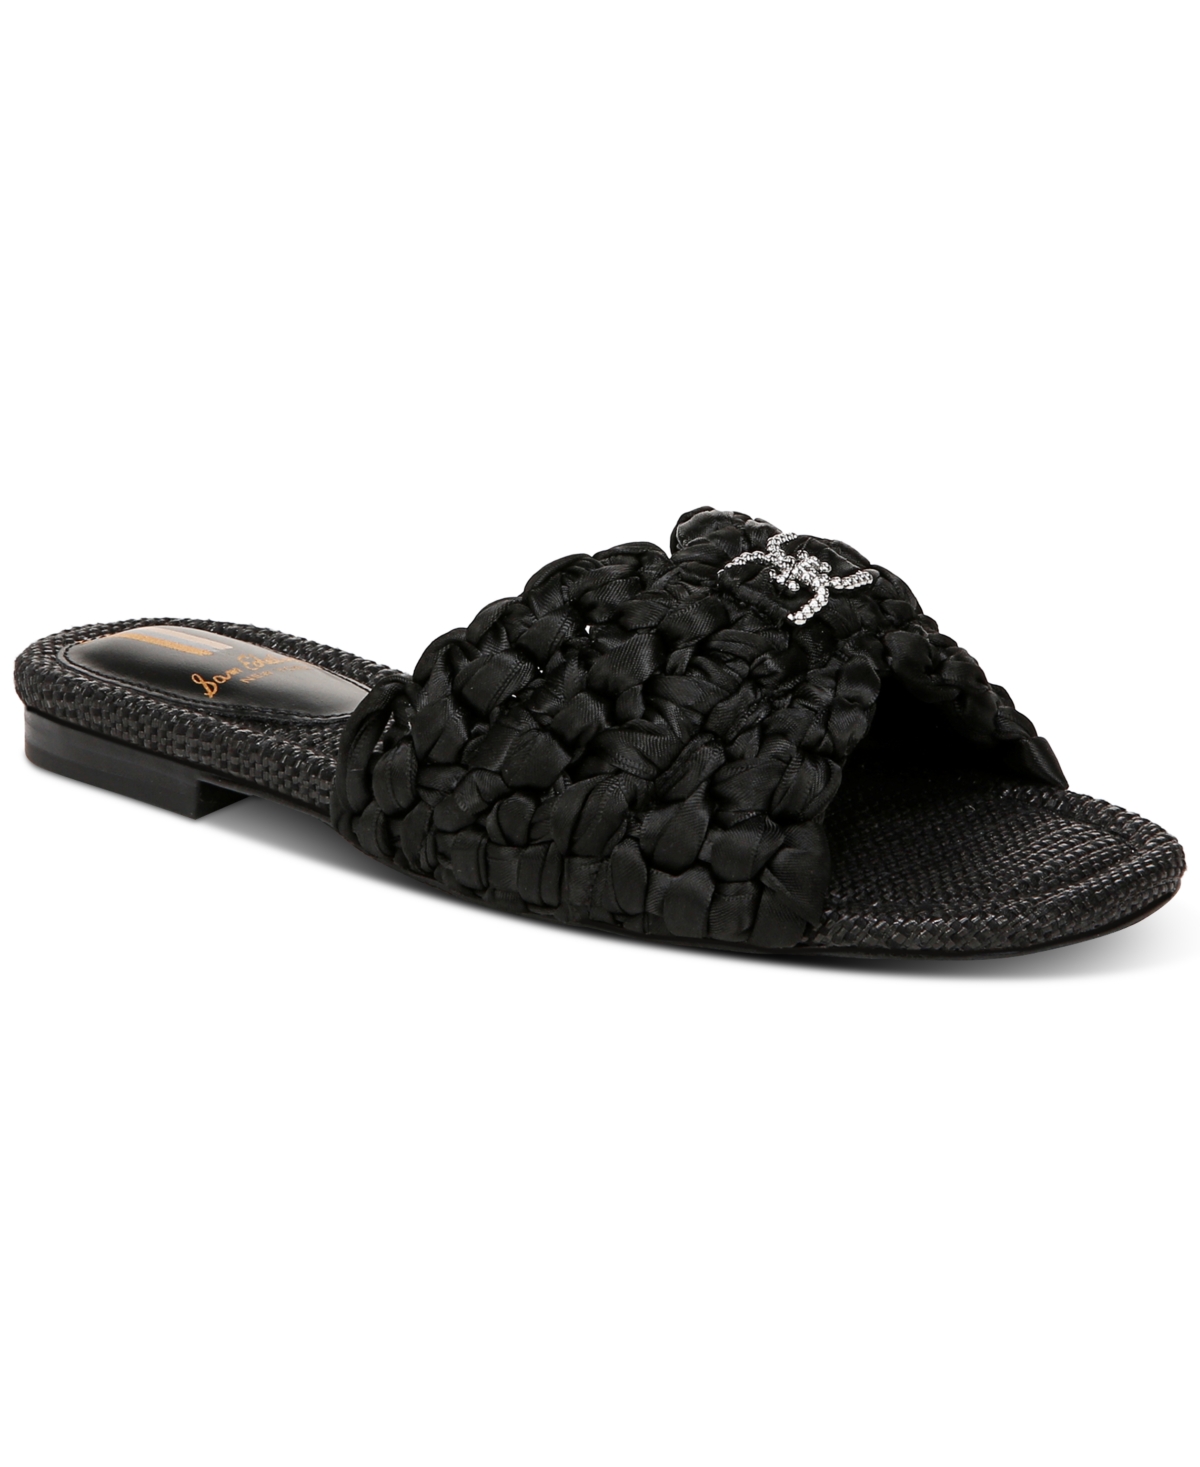 Women's Bridget Embellished Knotted Slide Flat Sandals - Black Satin